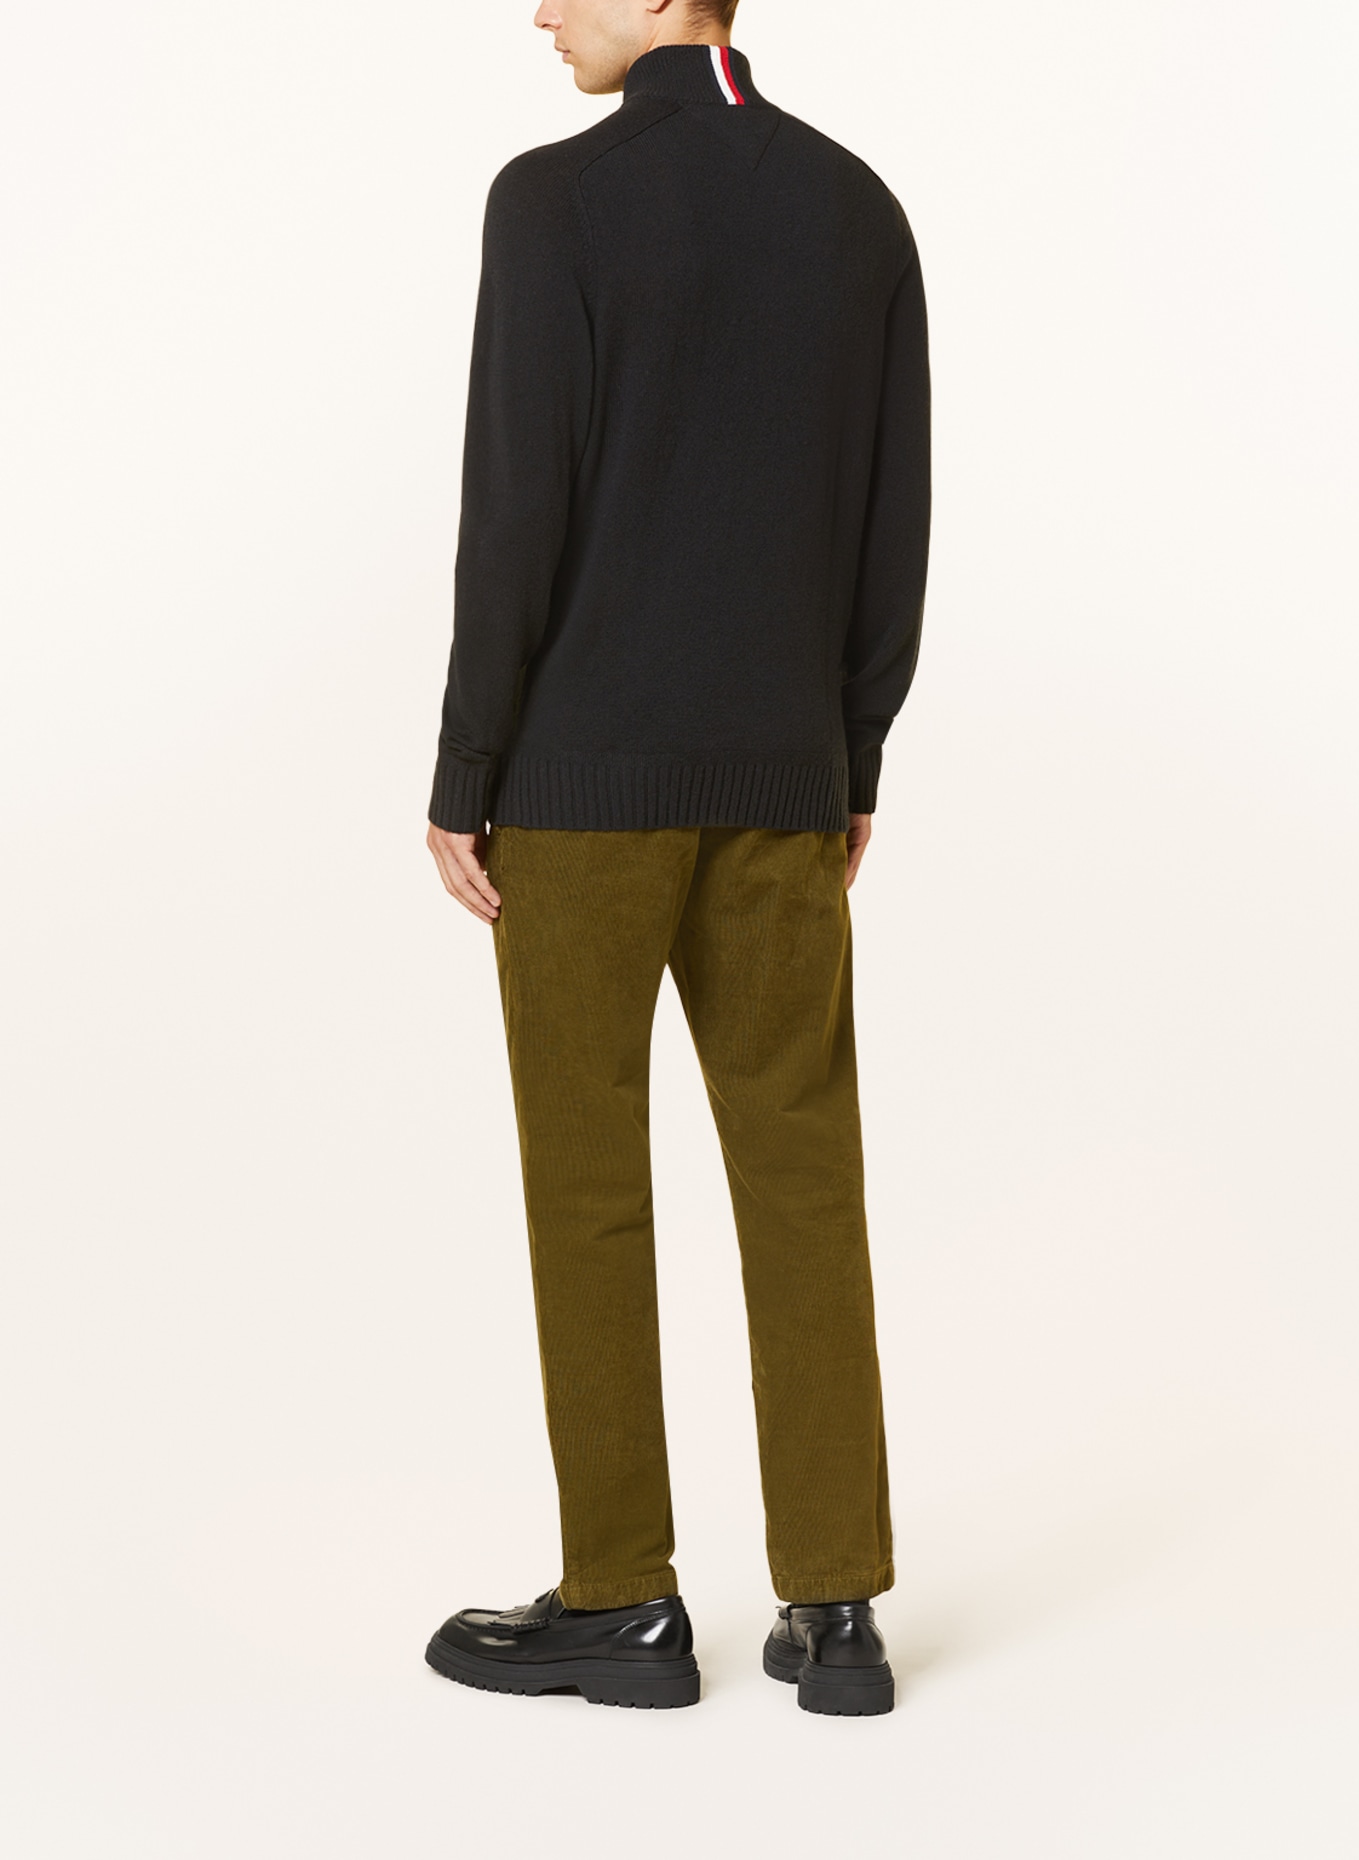 TOMMY HILFIGER Half-zip sweater, Color: BLACK (Image 3)